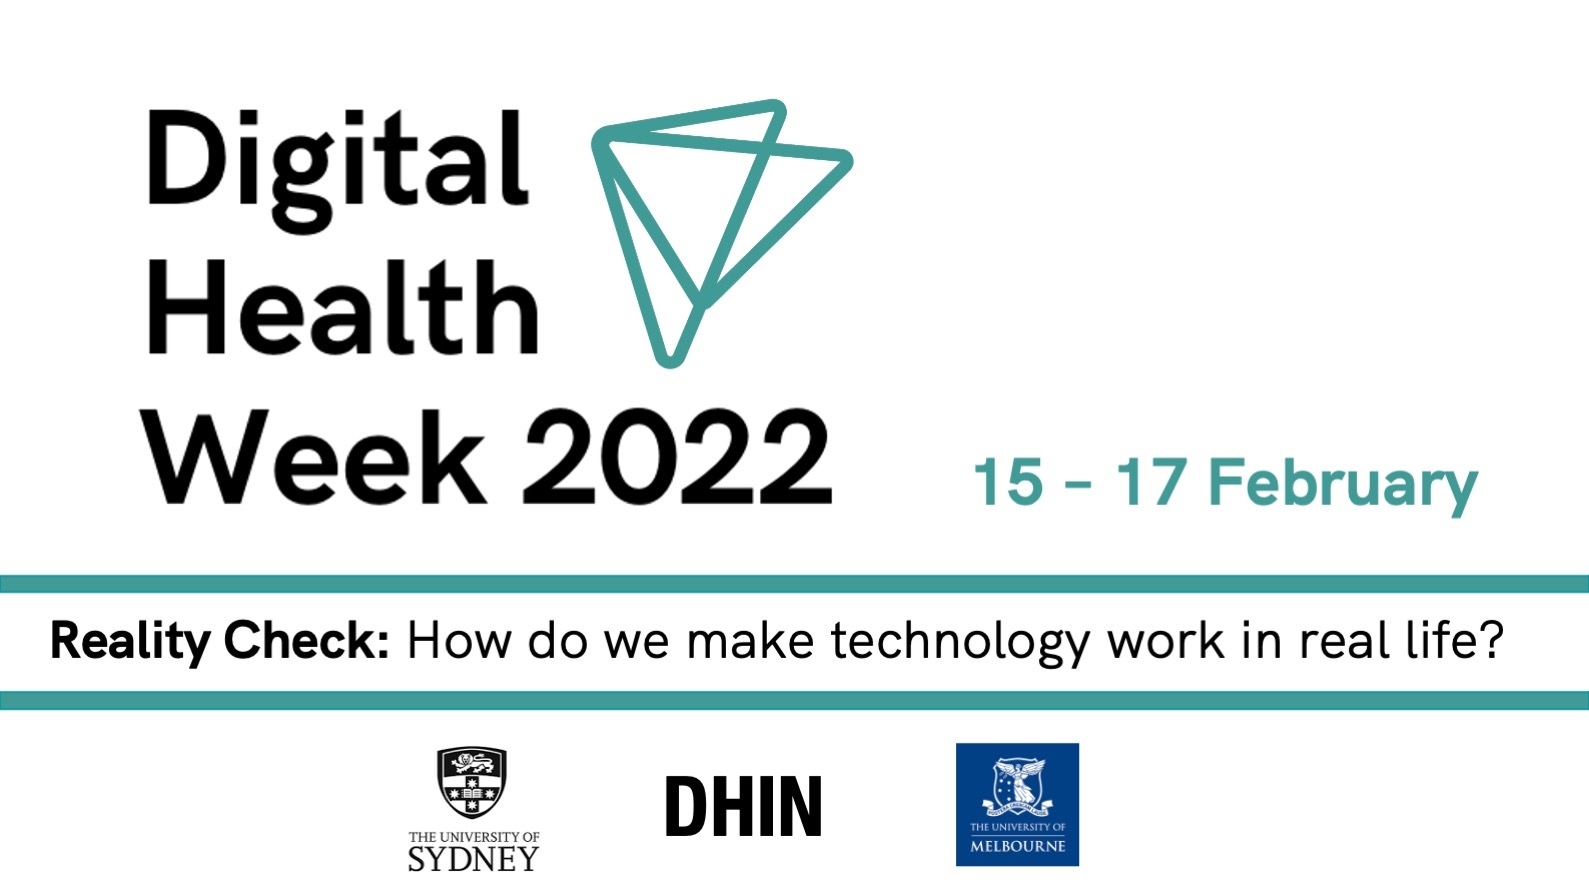 Digital Health Week 2022